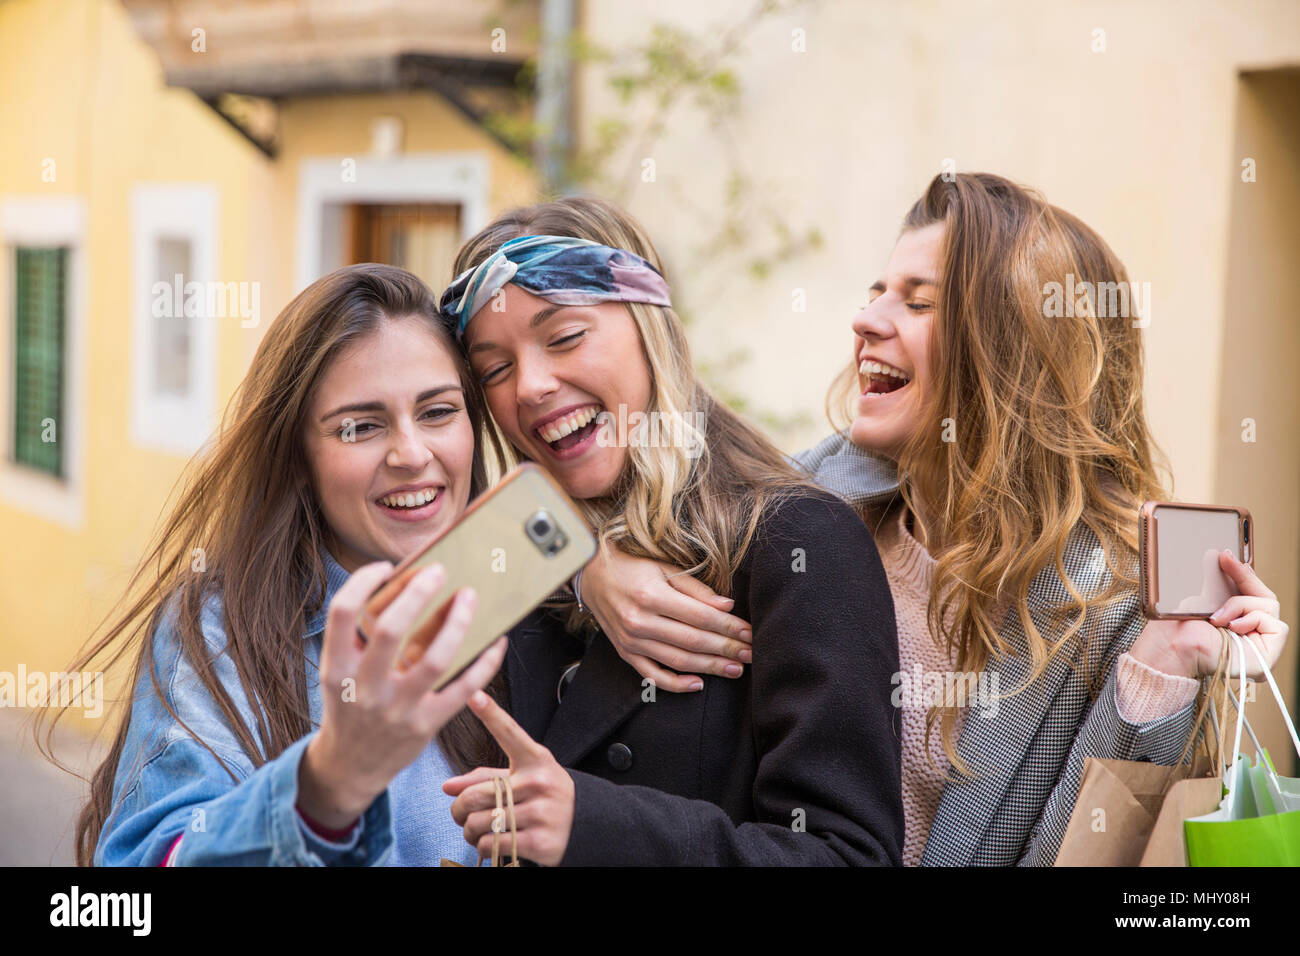 Friends taking selfie in street Stock Photo